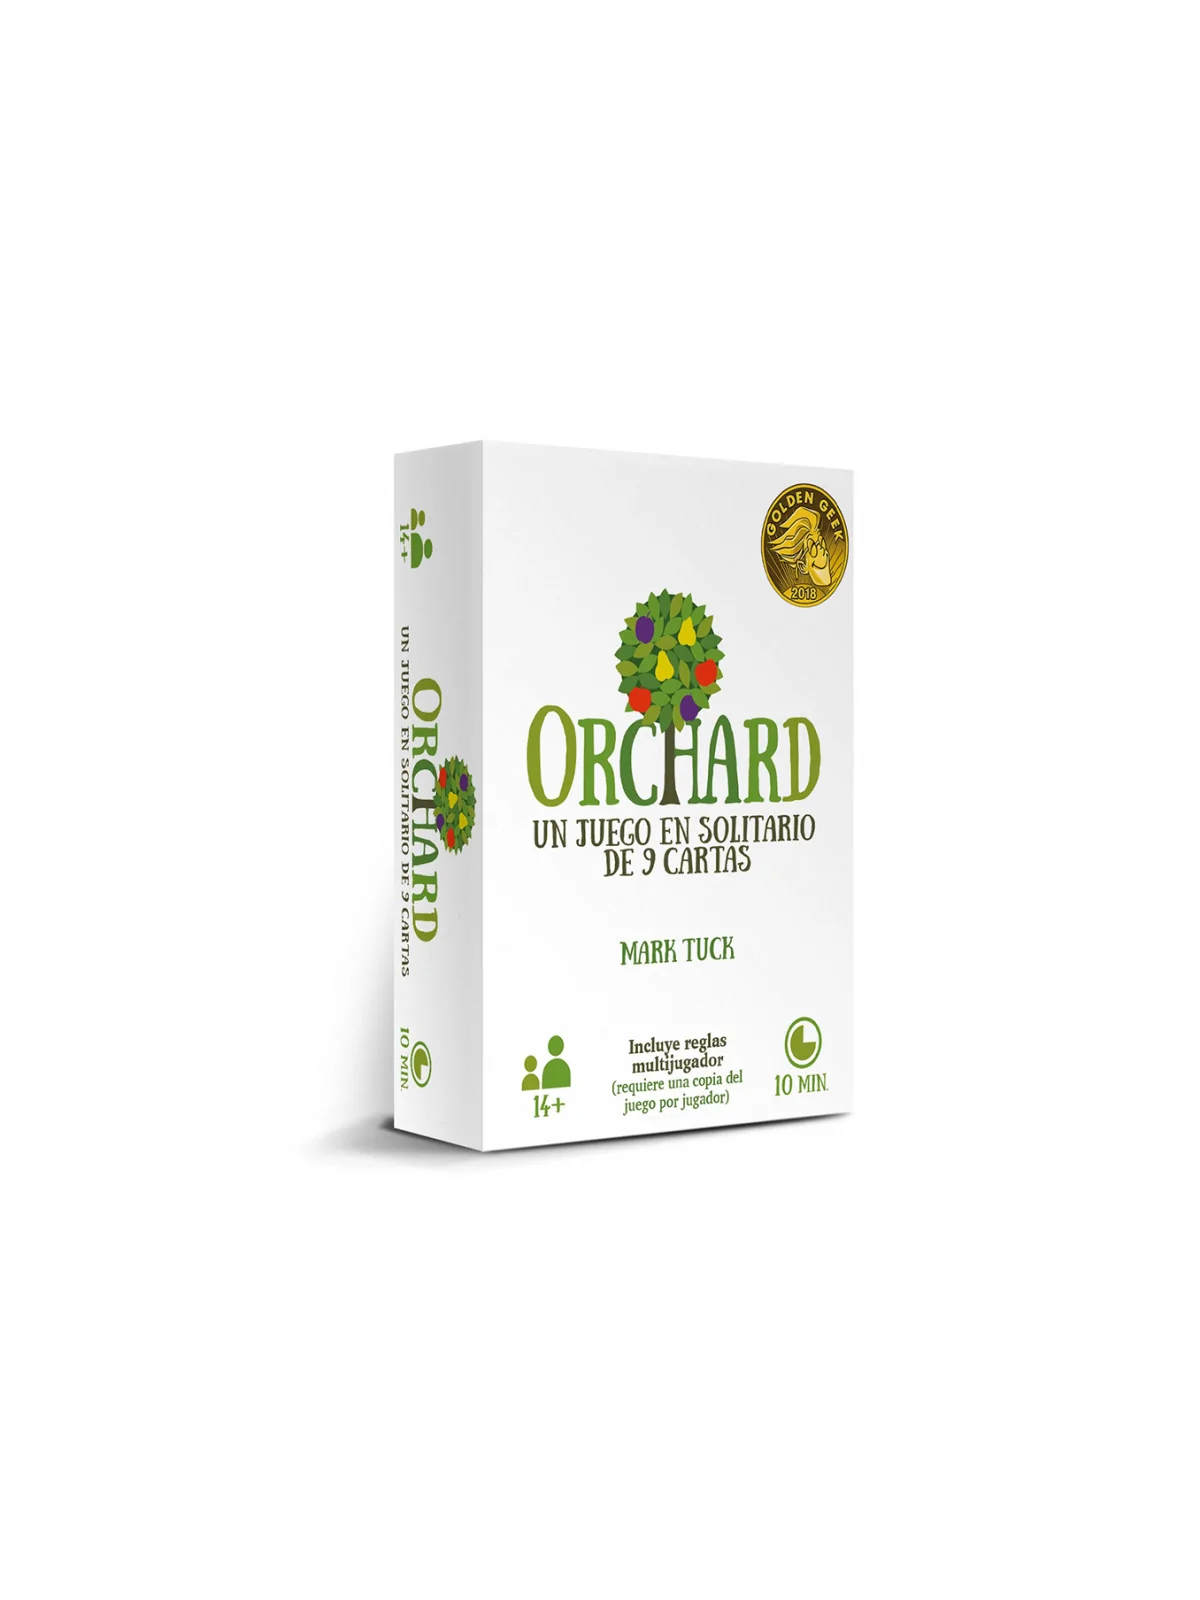 Comprar Orchard barato al mejor precio 14,40 € de Melmac Games